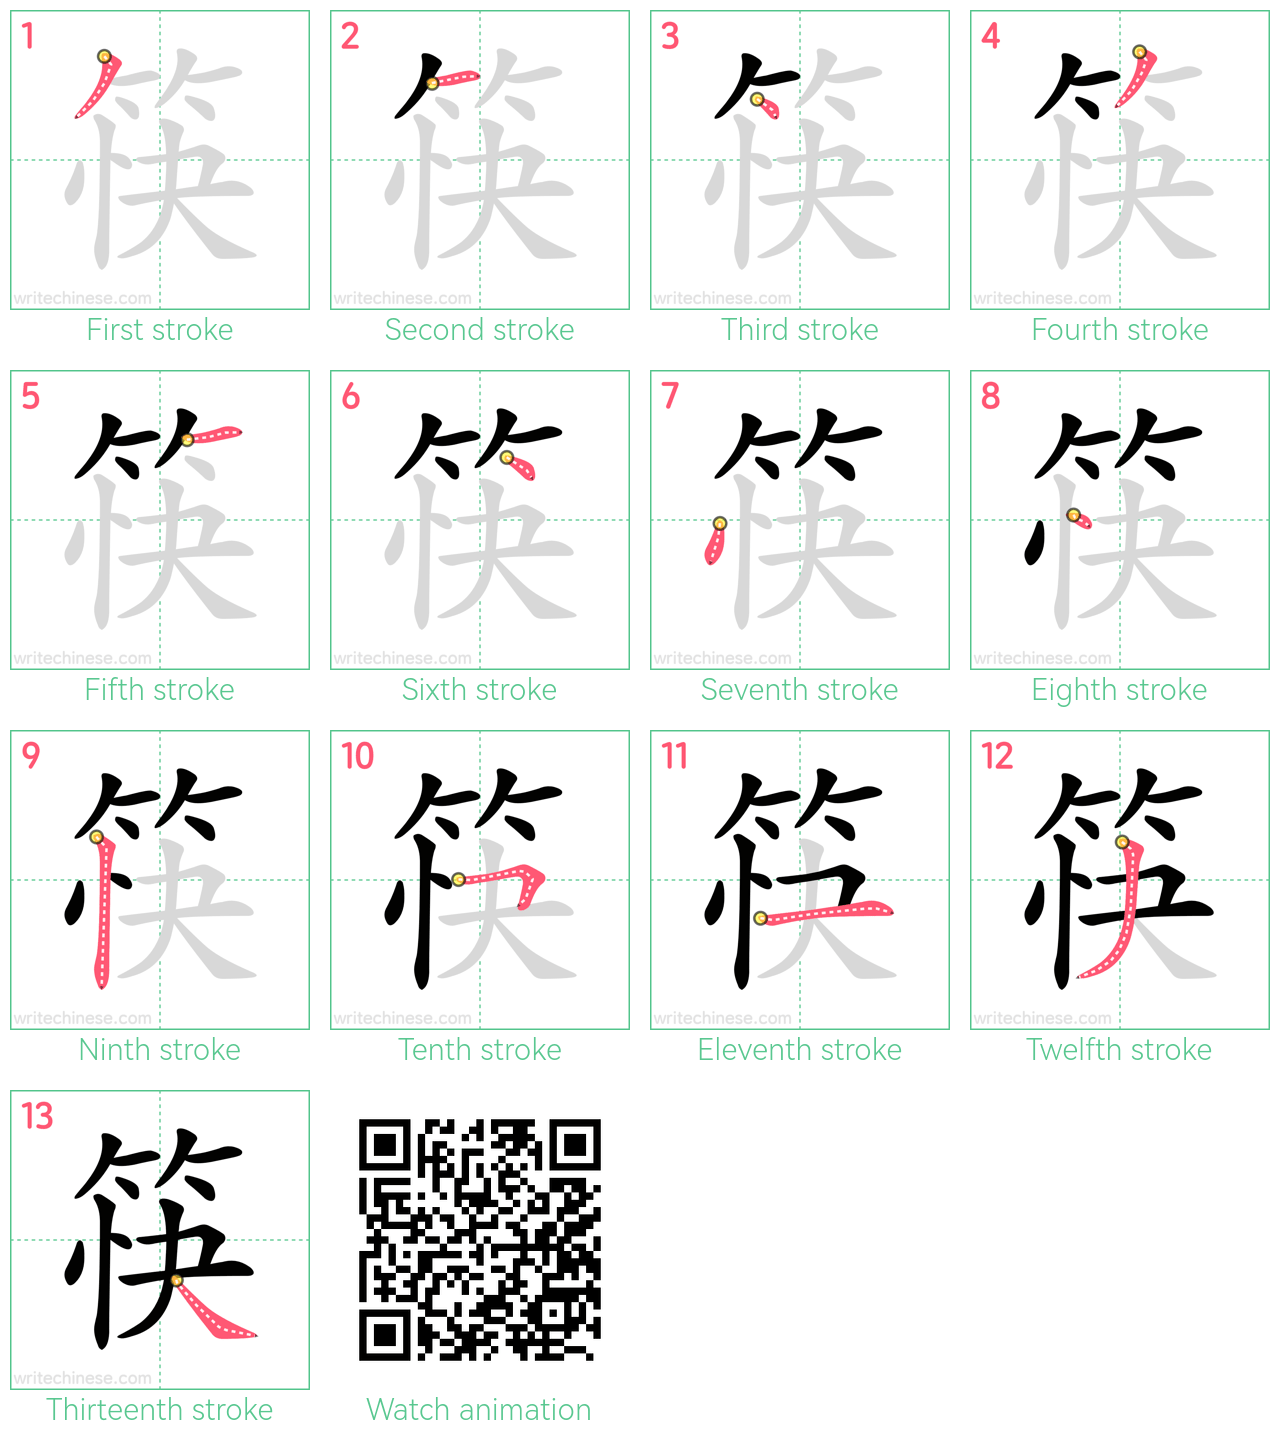 筷 step-by-step stroke order diagrams